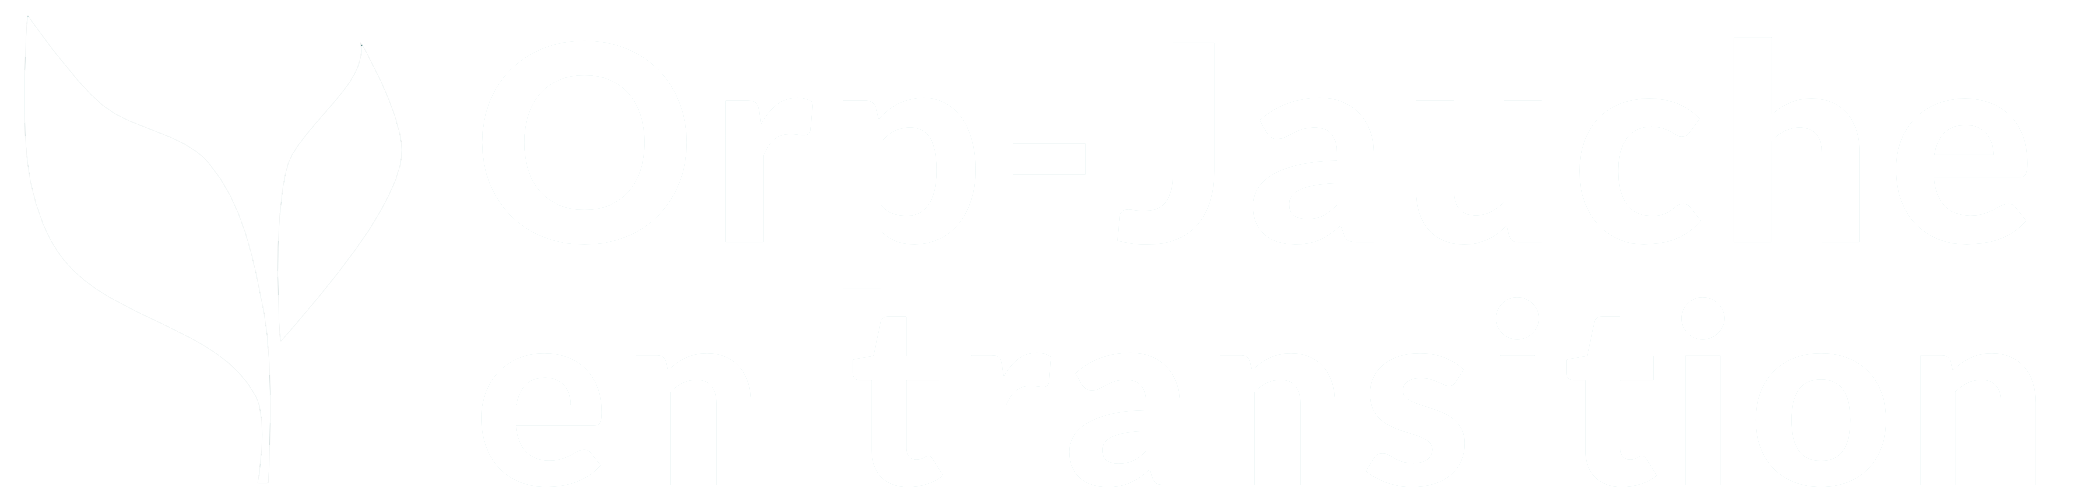 Orp-Jauche en transition